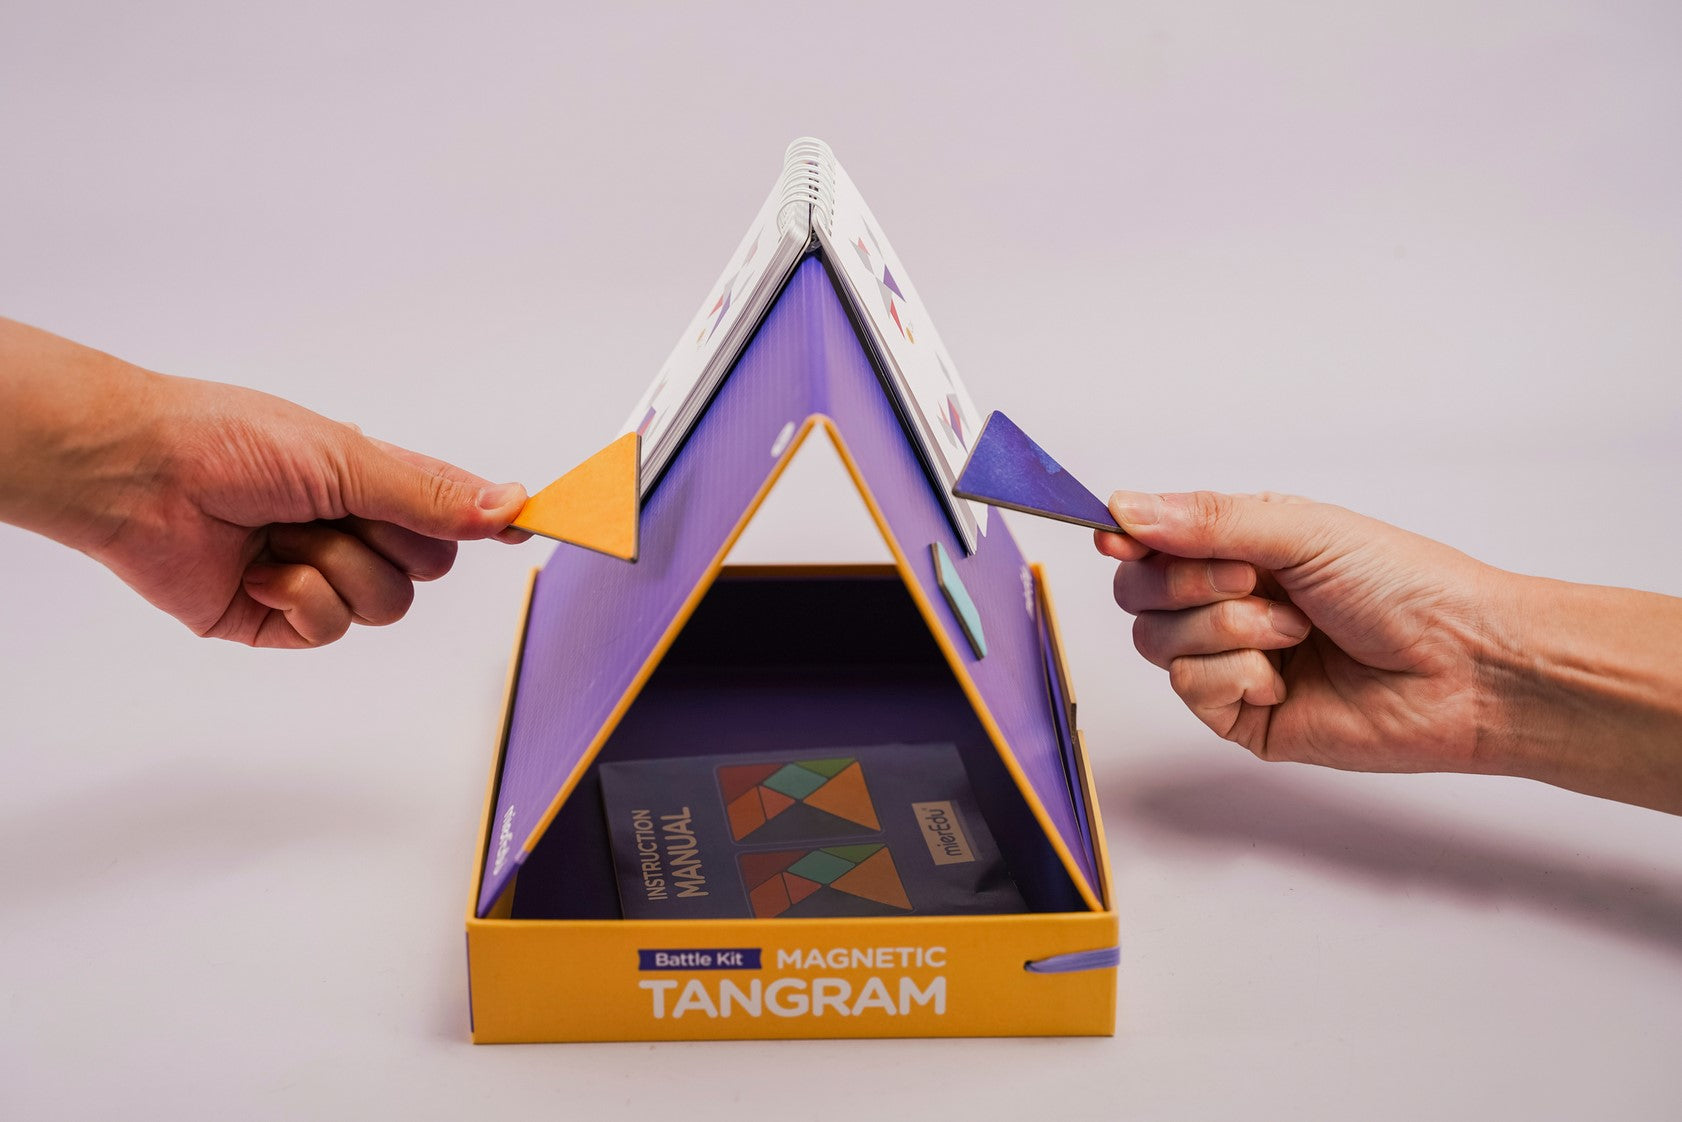 mierEdu | Magnetic Tangram - Battle Kit